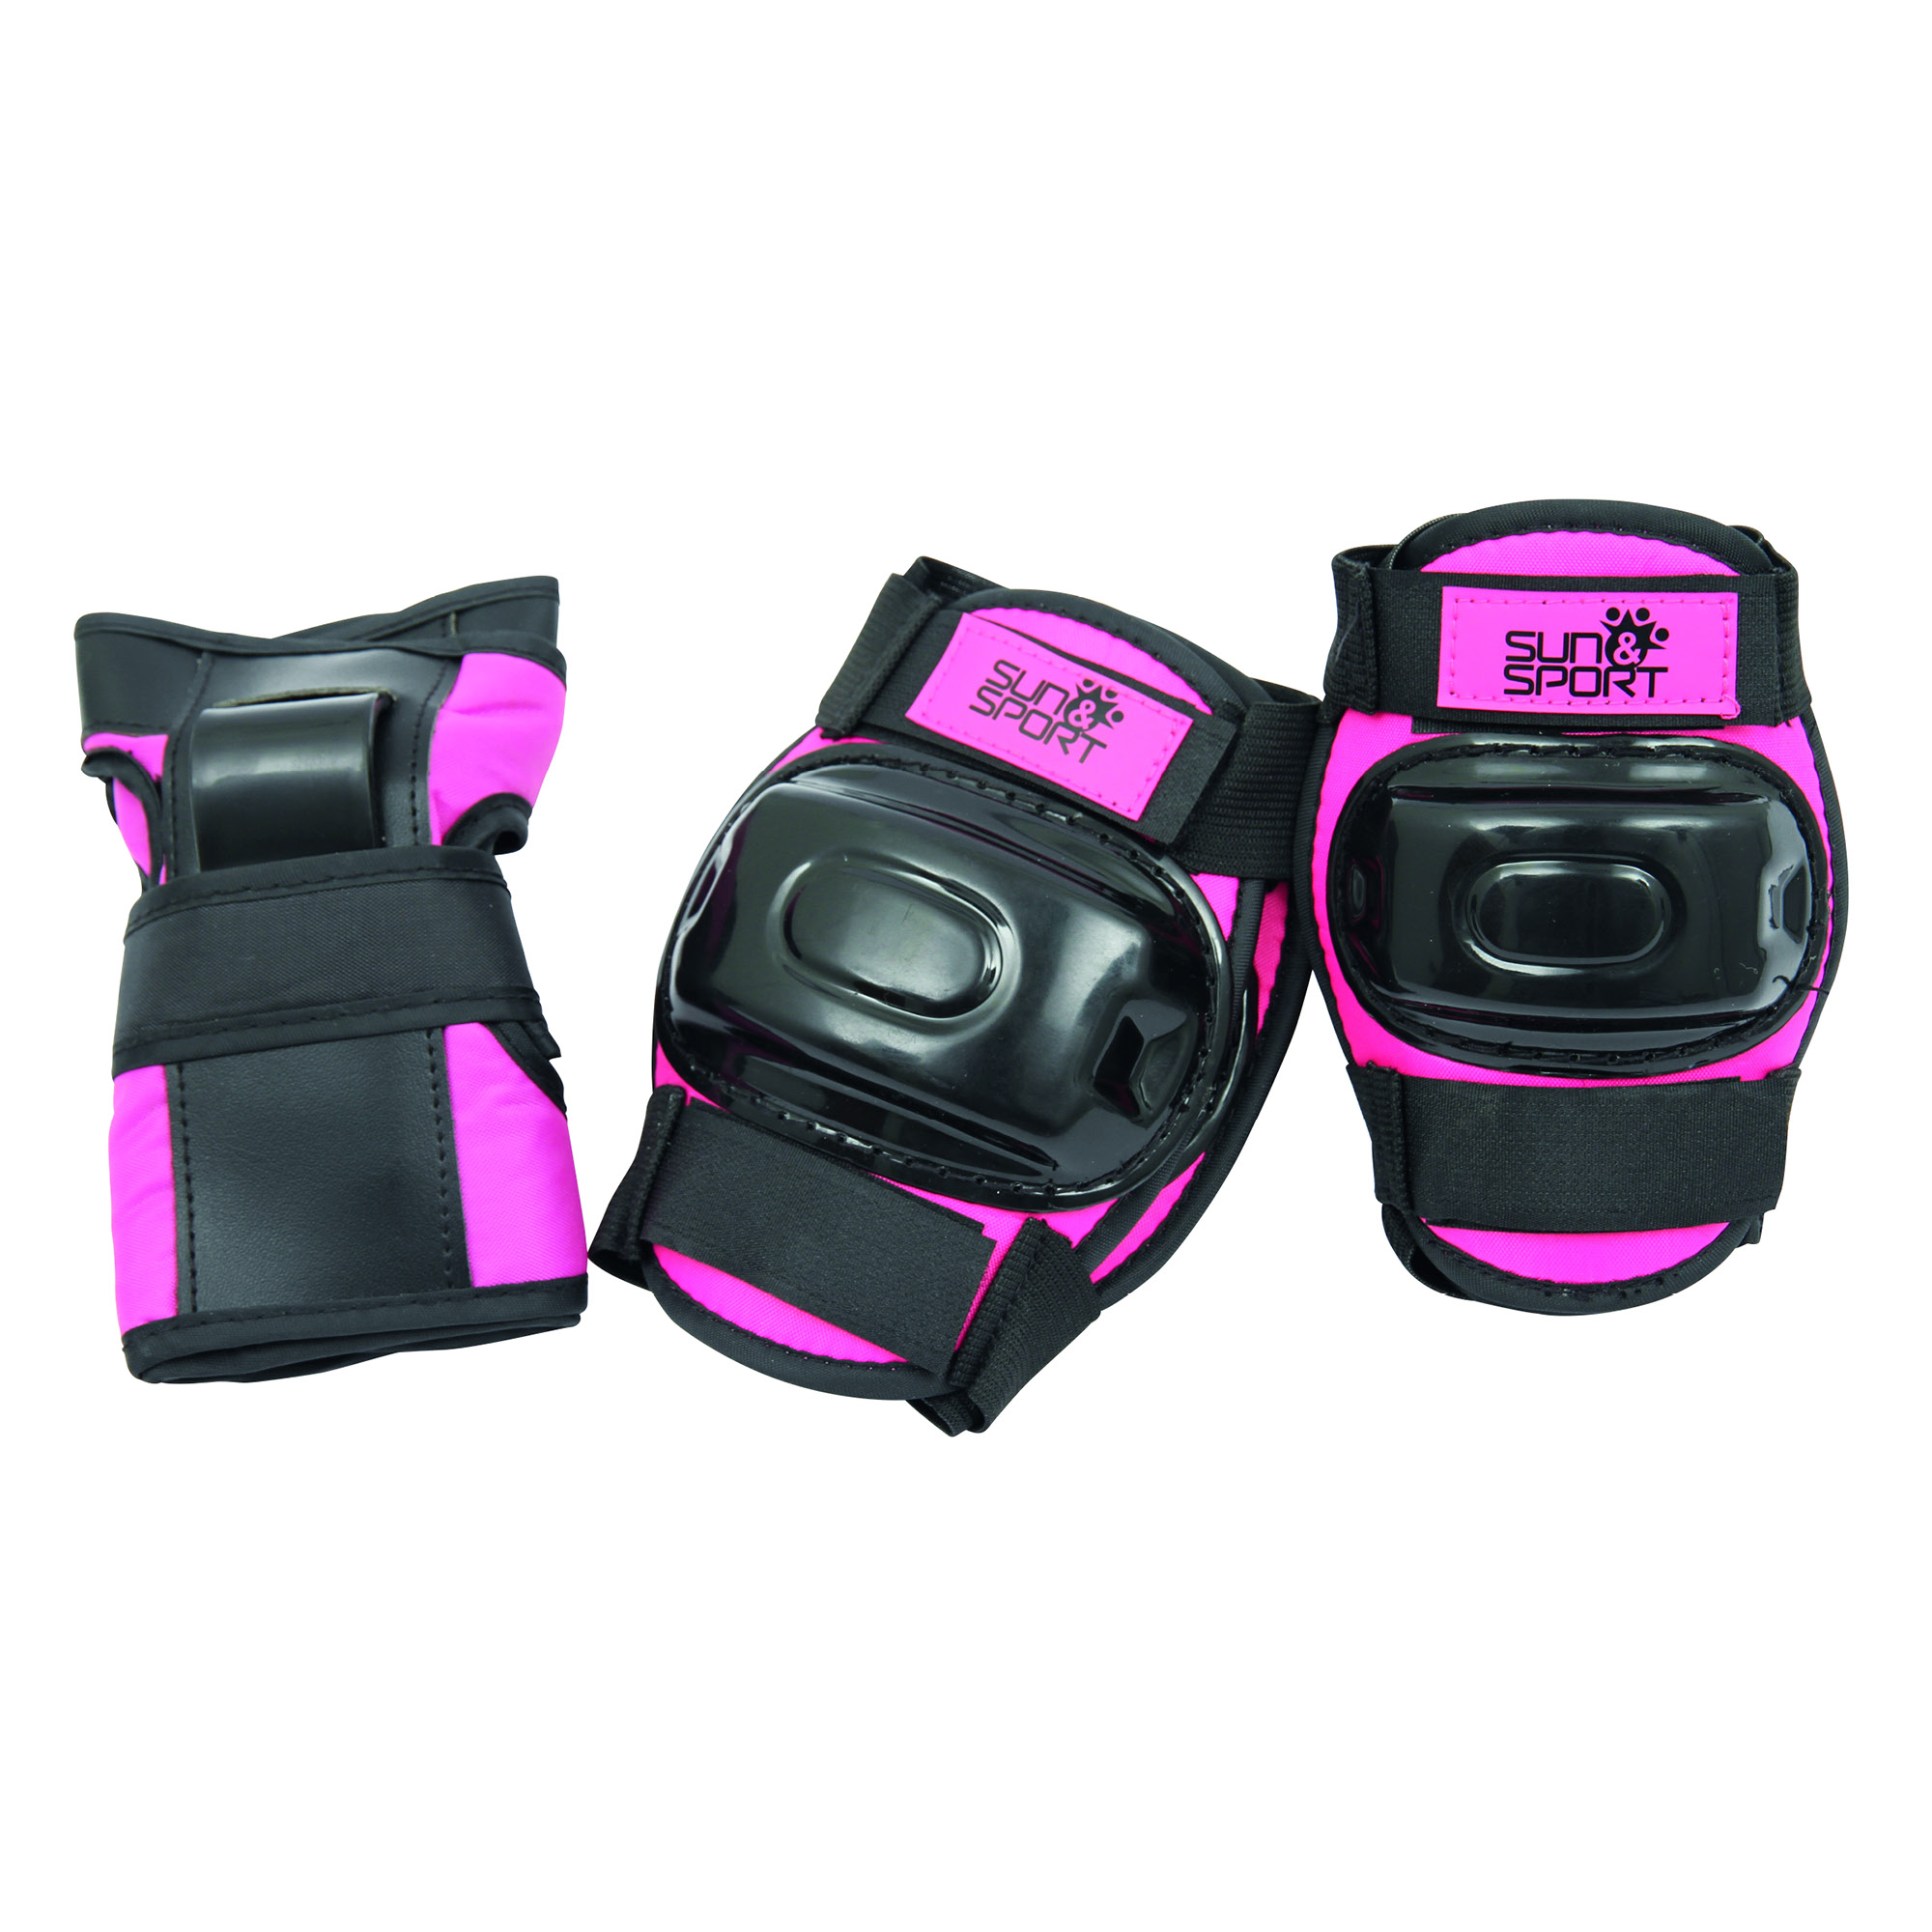 Set protezioni per pattinaggio, bici e altre attività sportive - regolabili, adatti a bambini fino a 50 kg - disponibile in rosa e blu - SUN&SPORT